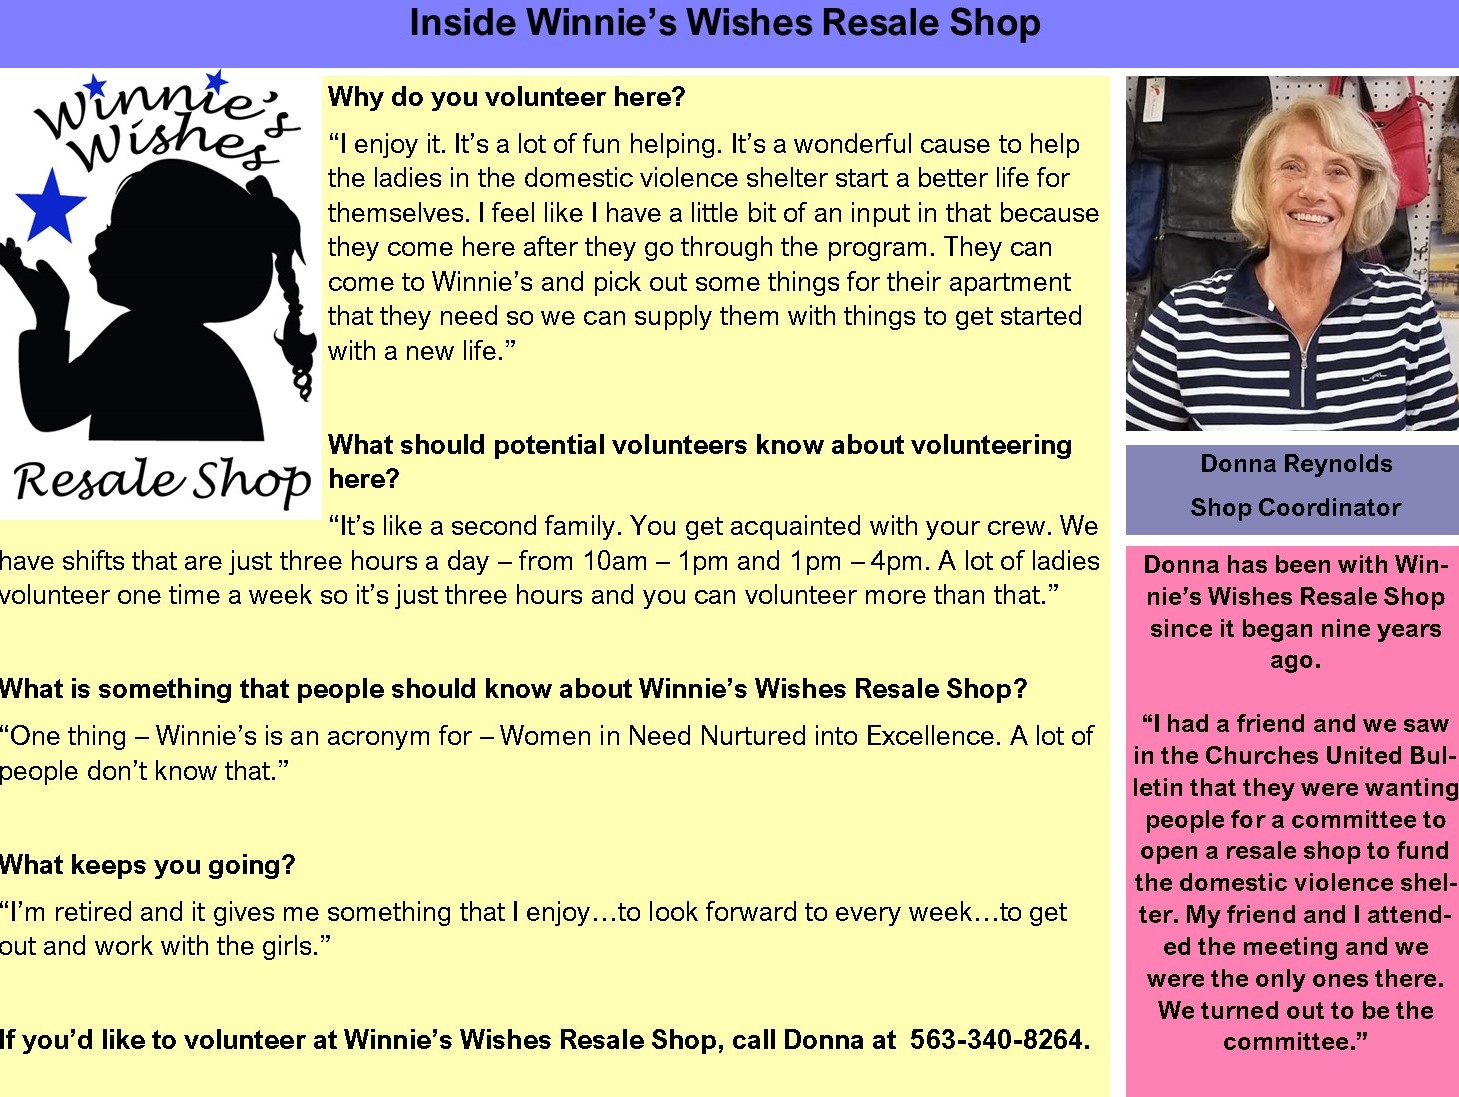 Donna Reynolds info box for Winnie's Wishes